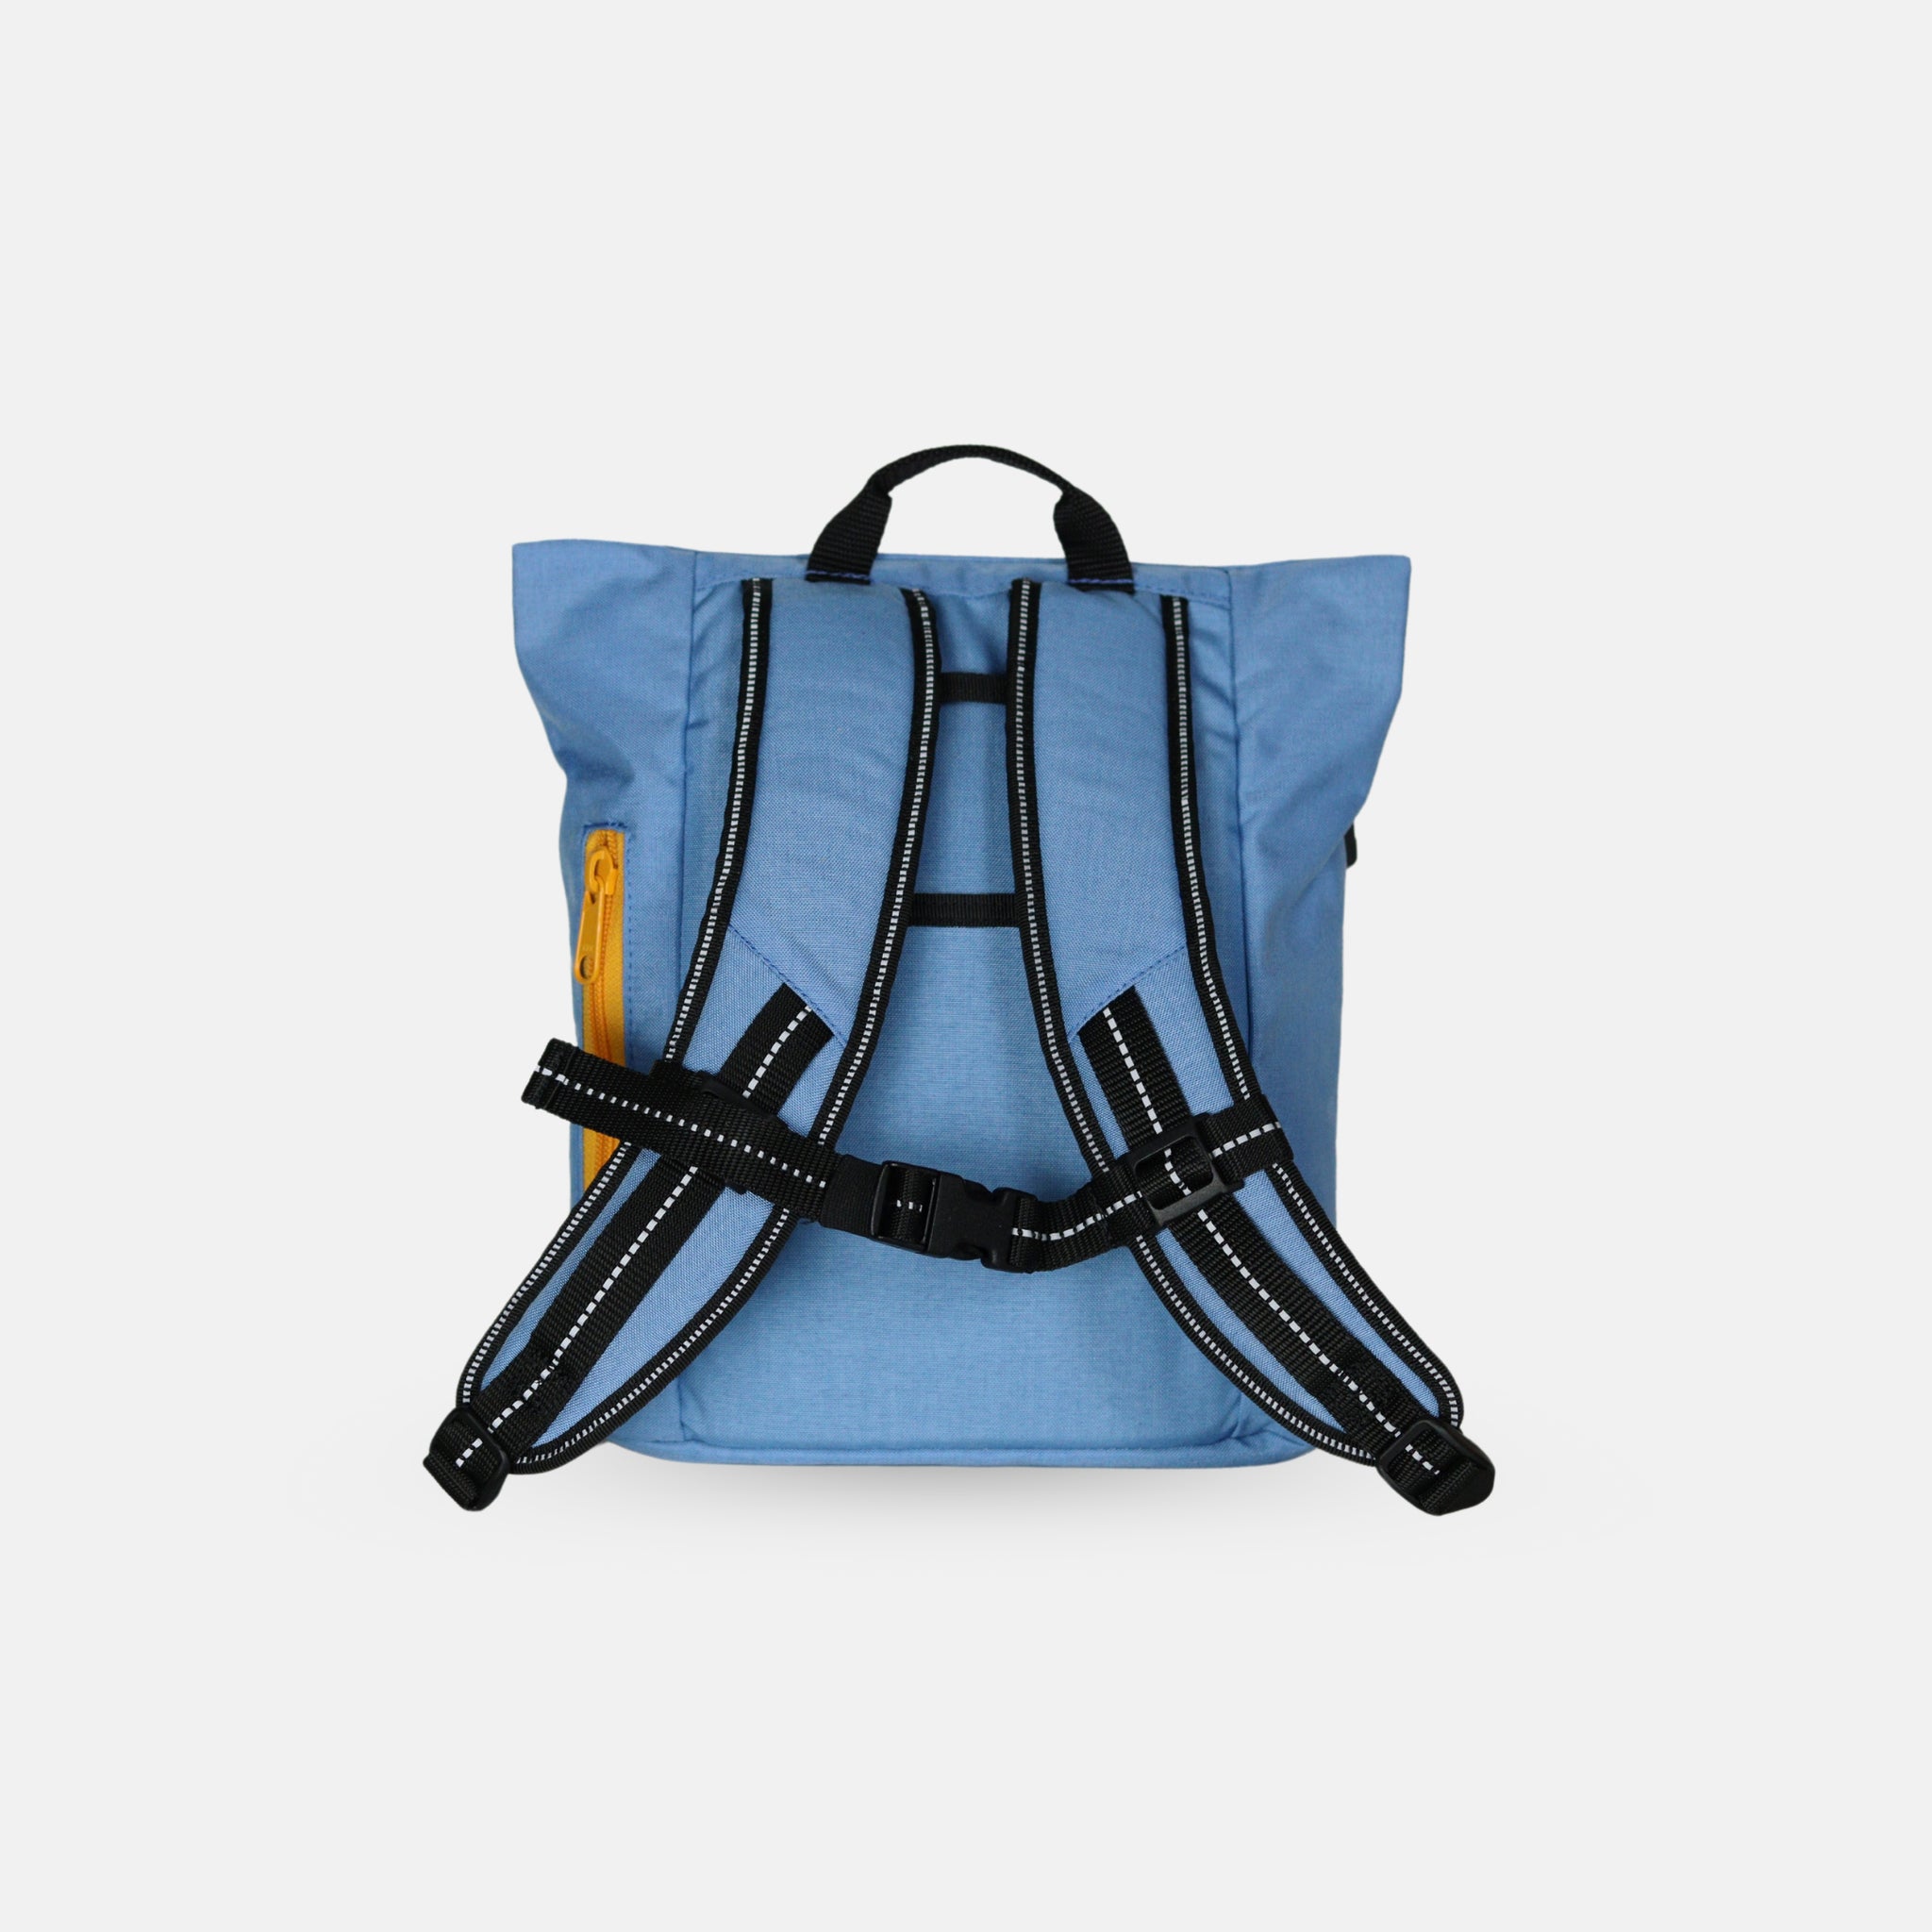 Blauer Rucksack für Kinder aus fairer Produktion. Langlebig und pflegeleicht für die Kita..